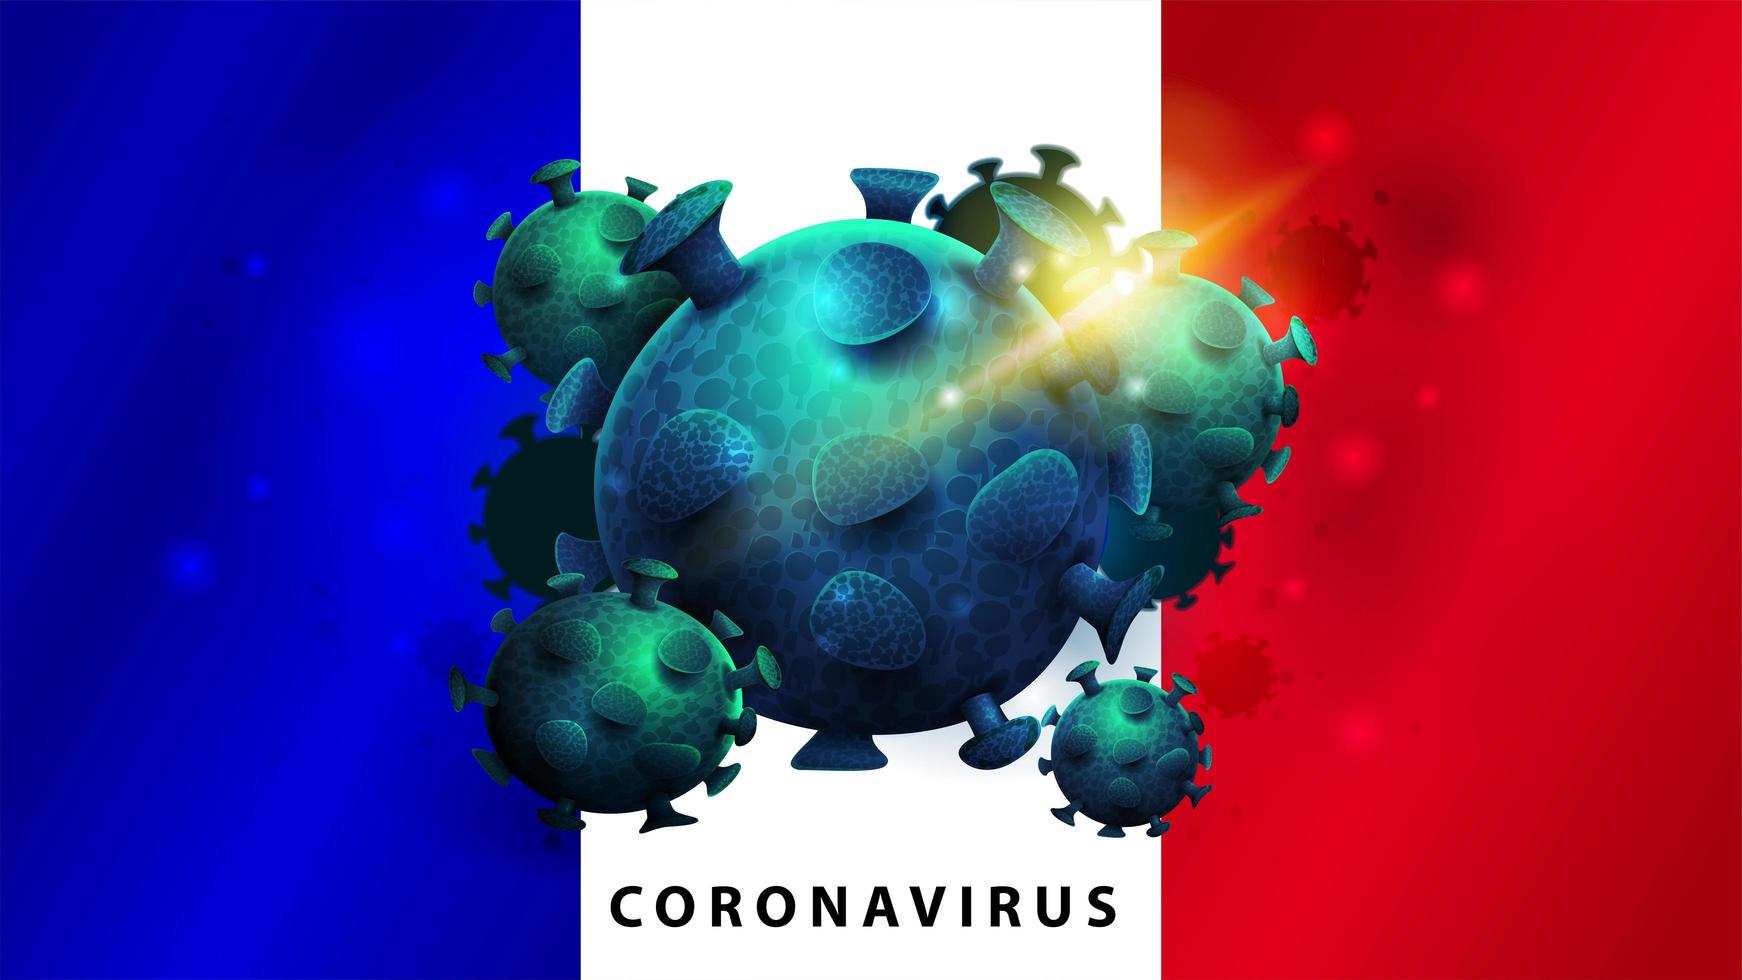 teken van coronavirus covid-2019 op de vlag van frankrijk vector